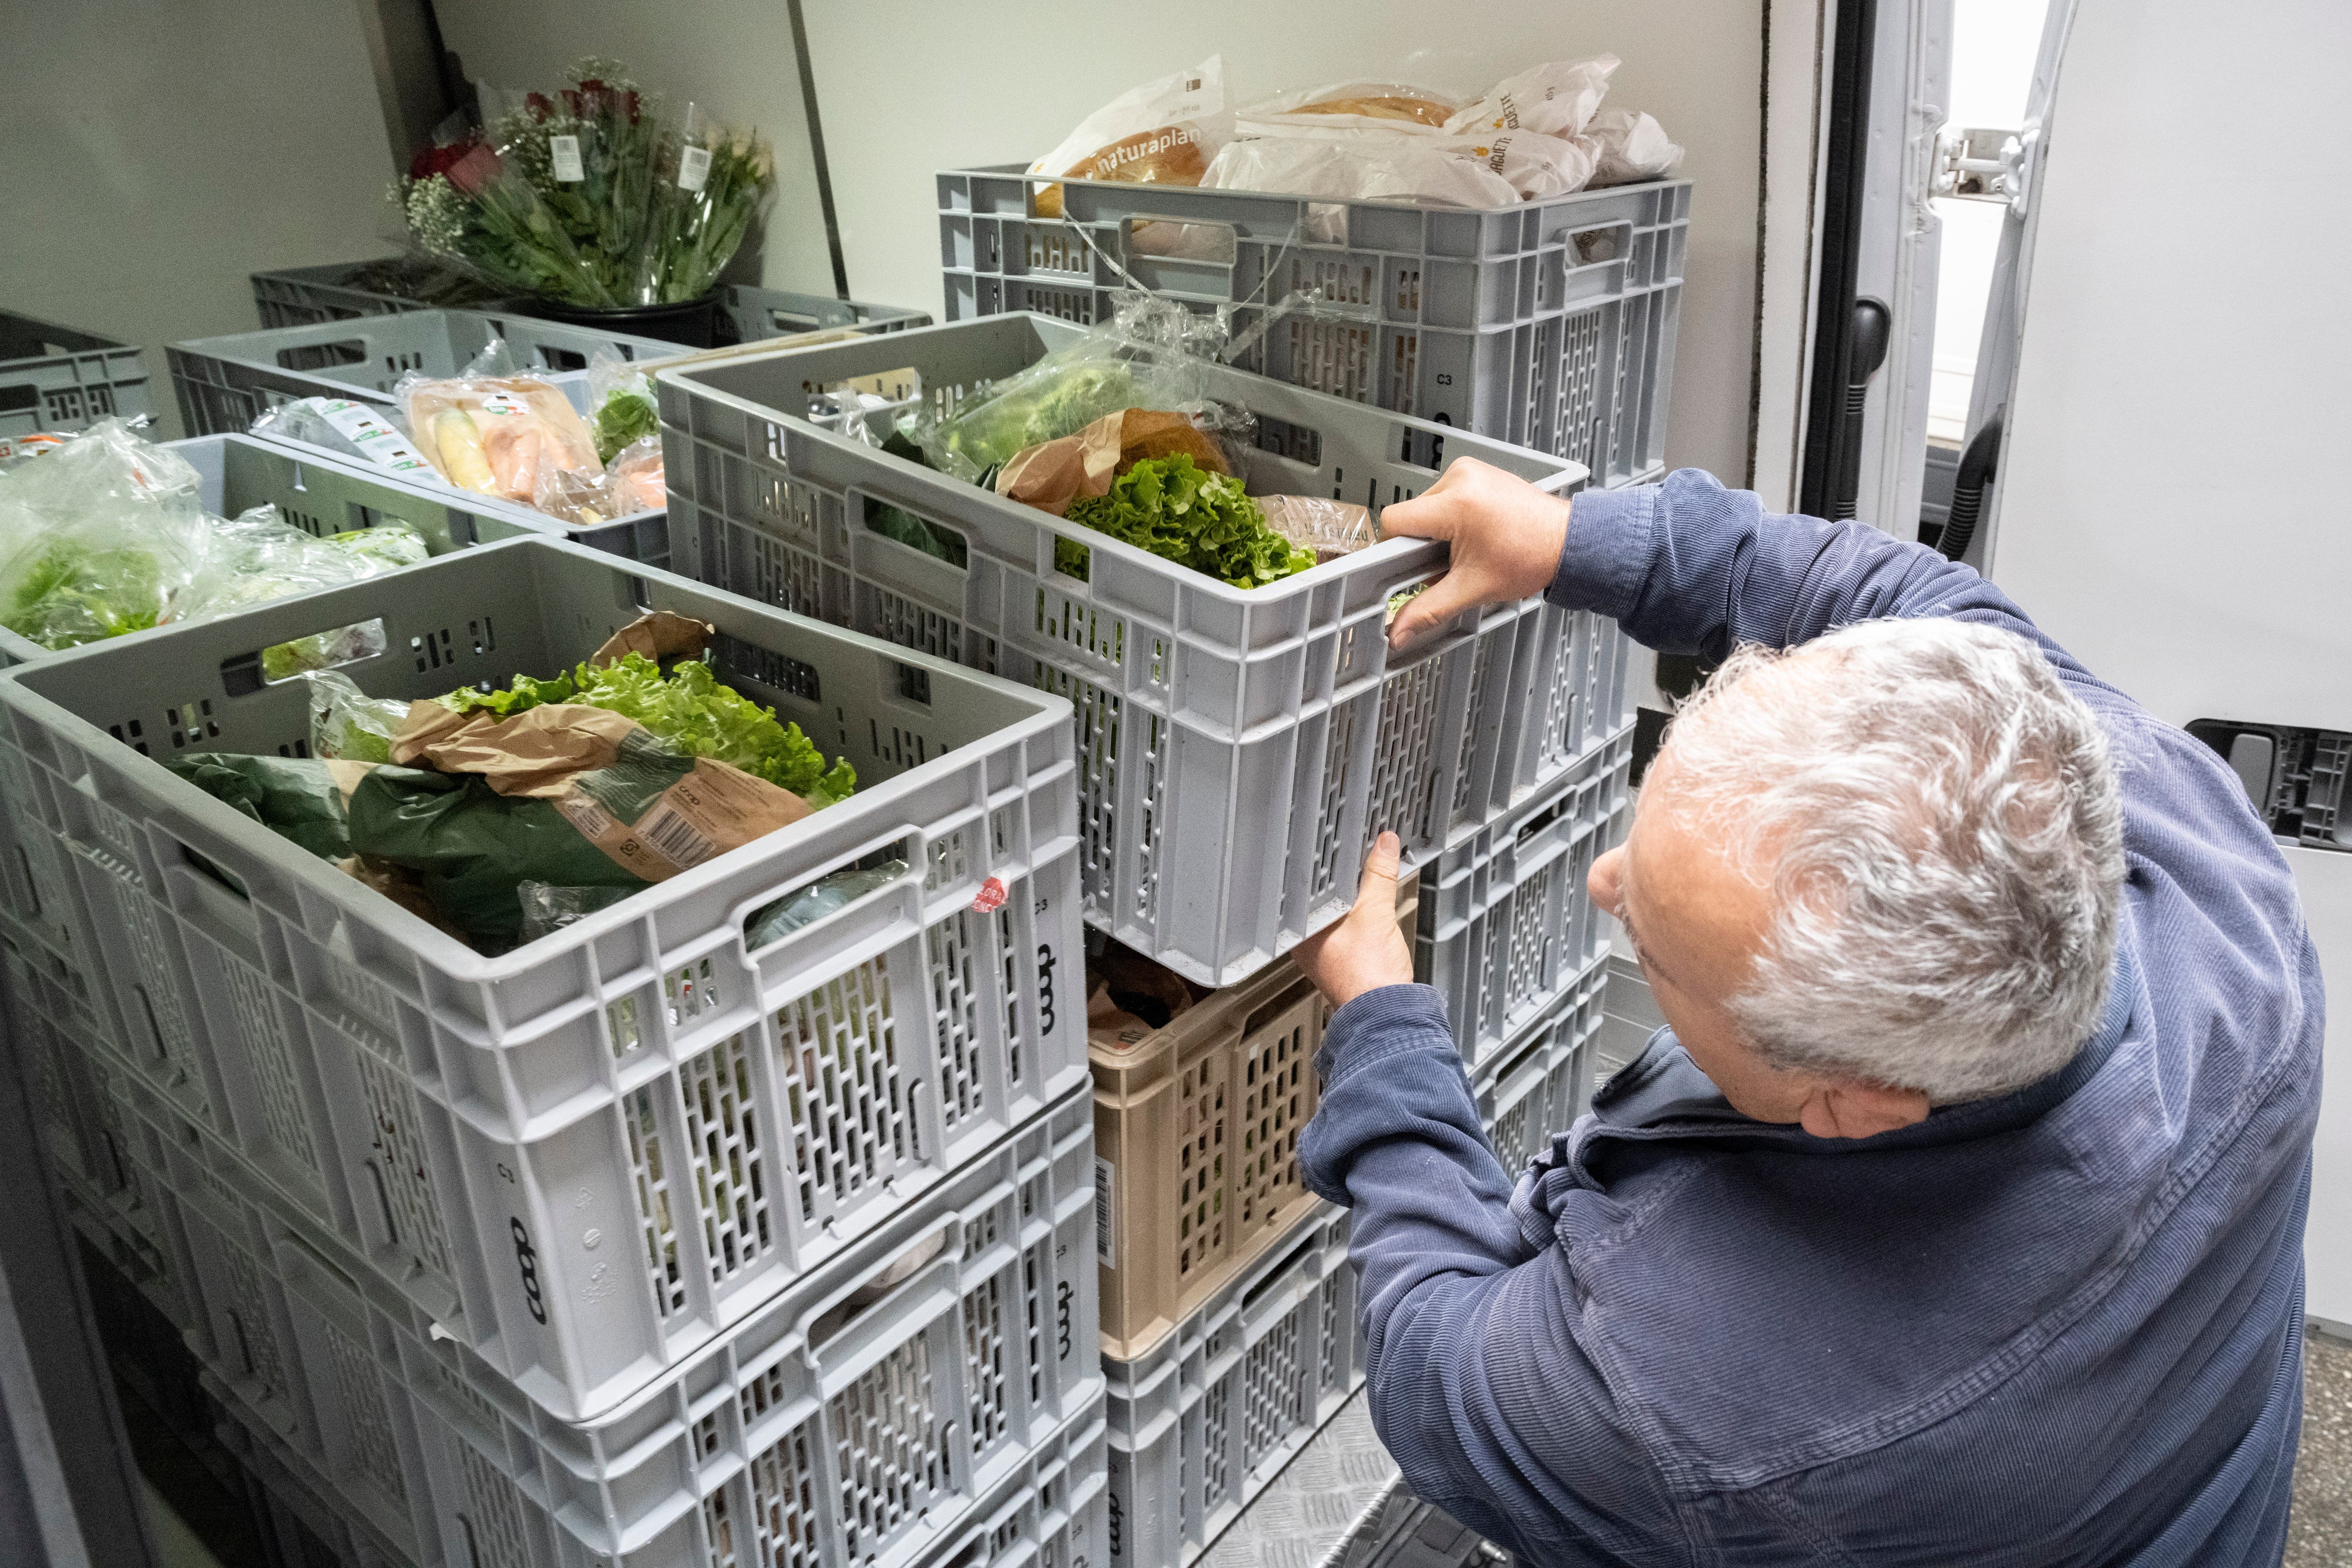 Viel Salat und Gemüse, aber auch Brot und sogar ein paar Blumen: Abbas Hussein lädt kistenweise Lebensmittel in den Lieferwagen.